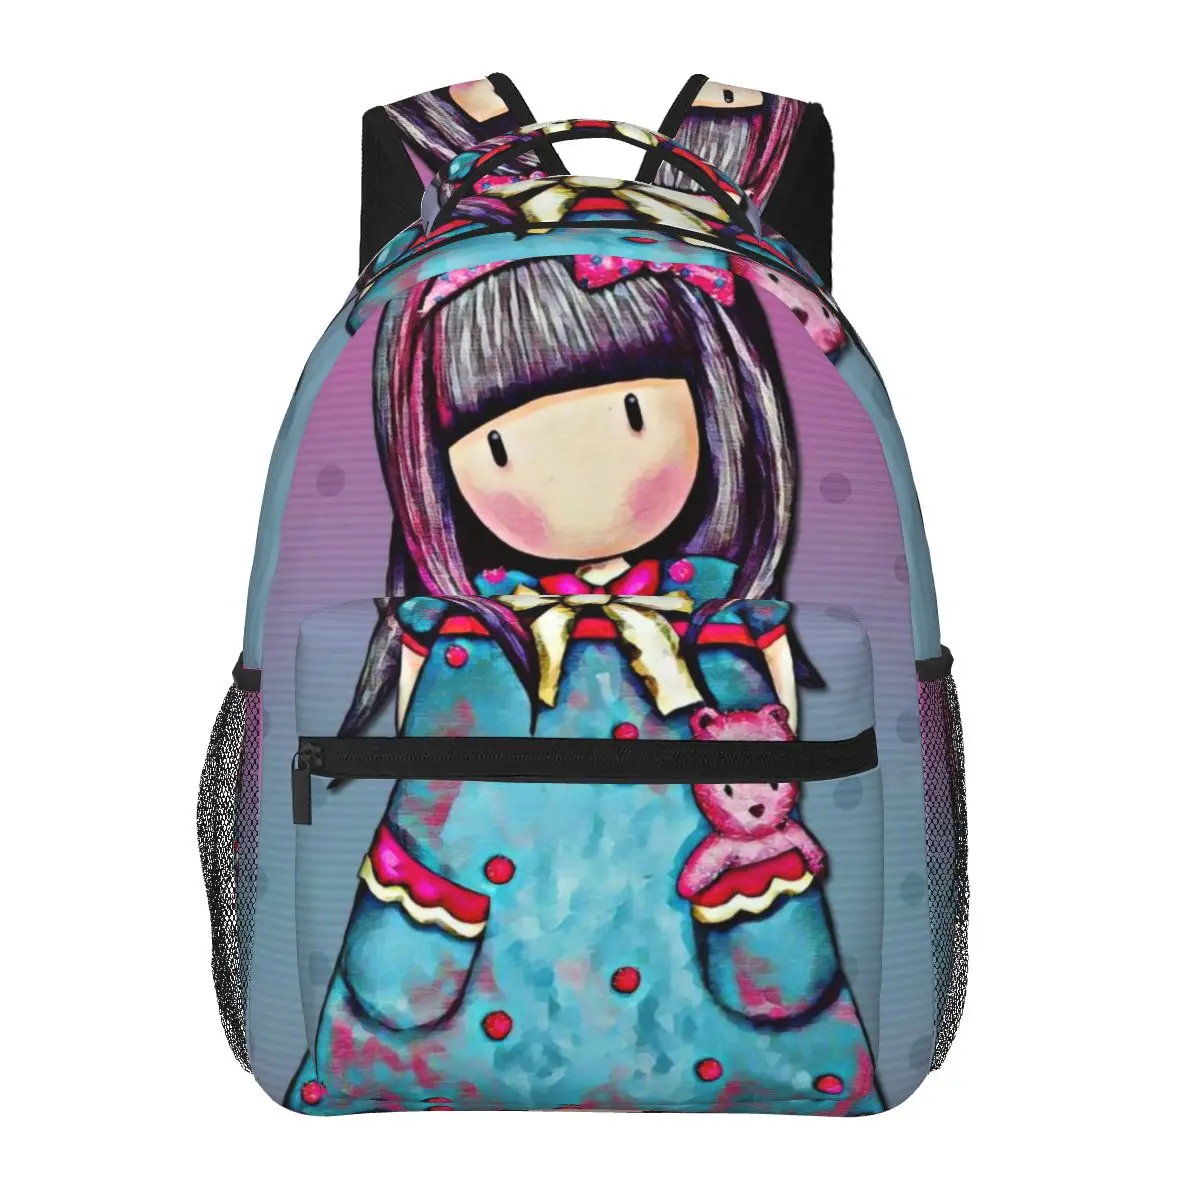 

Художественный мультяшный, рюкзак Gorjuss для девочек и мальчиков, дорожные рюкзаки для подростков, школьная сумка